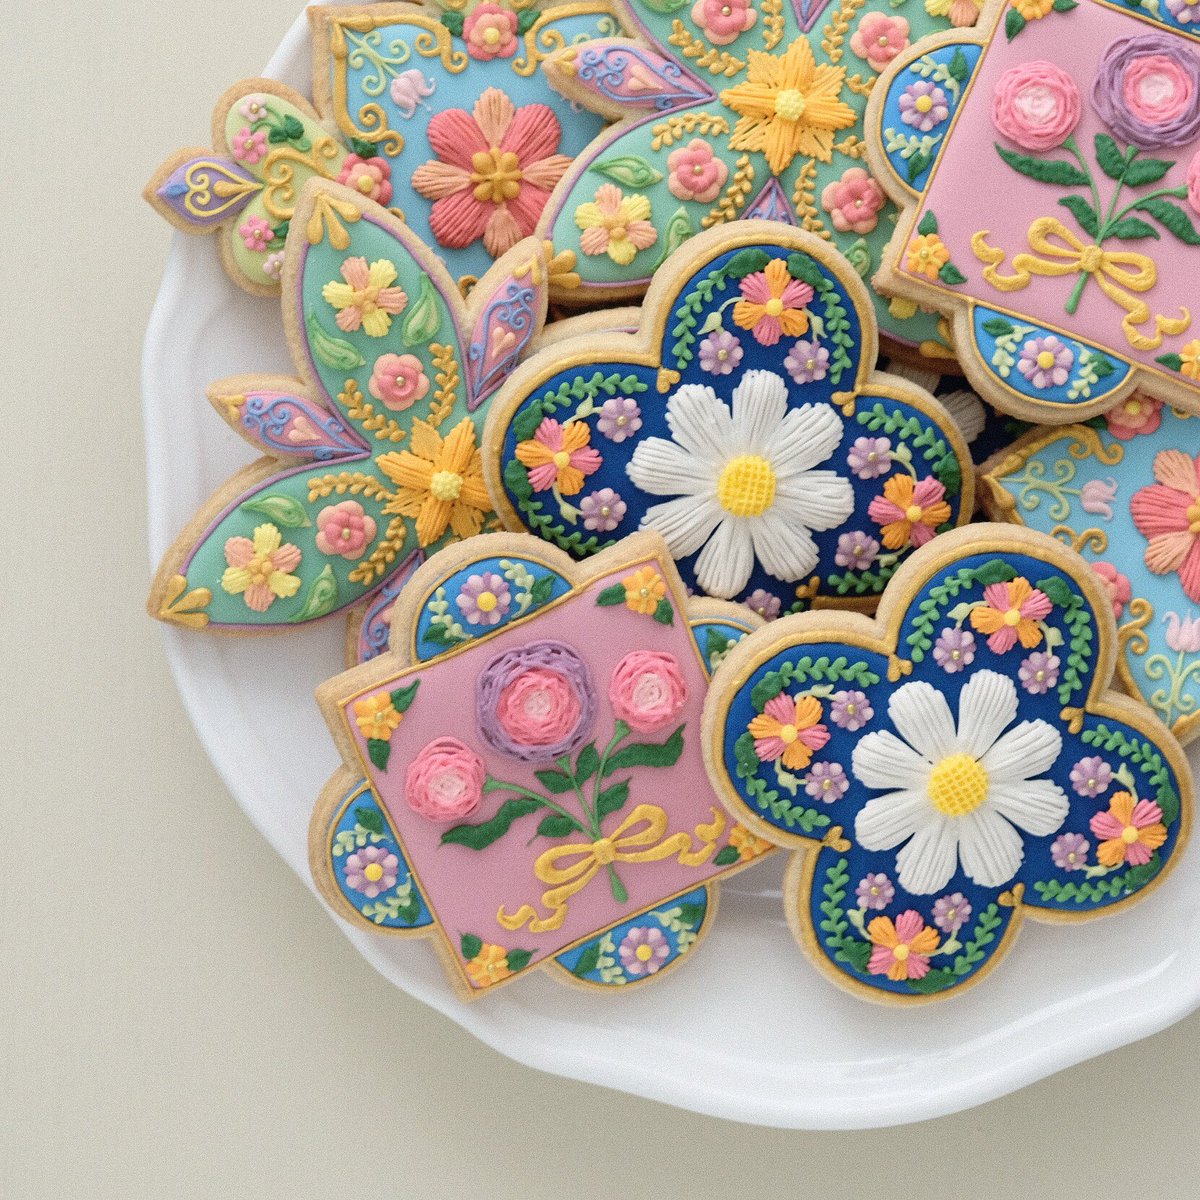 まるで芸術作品 本物の刺繍みたいなお花のタイルクッキー 話題の画像プラス